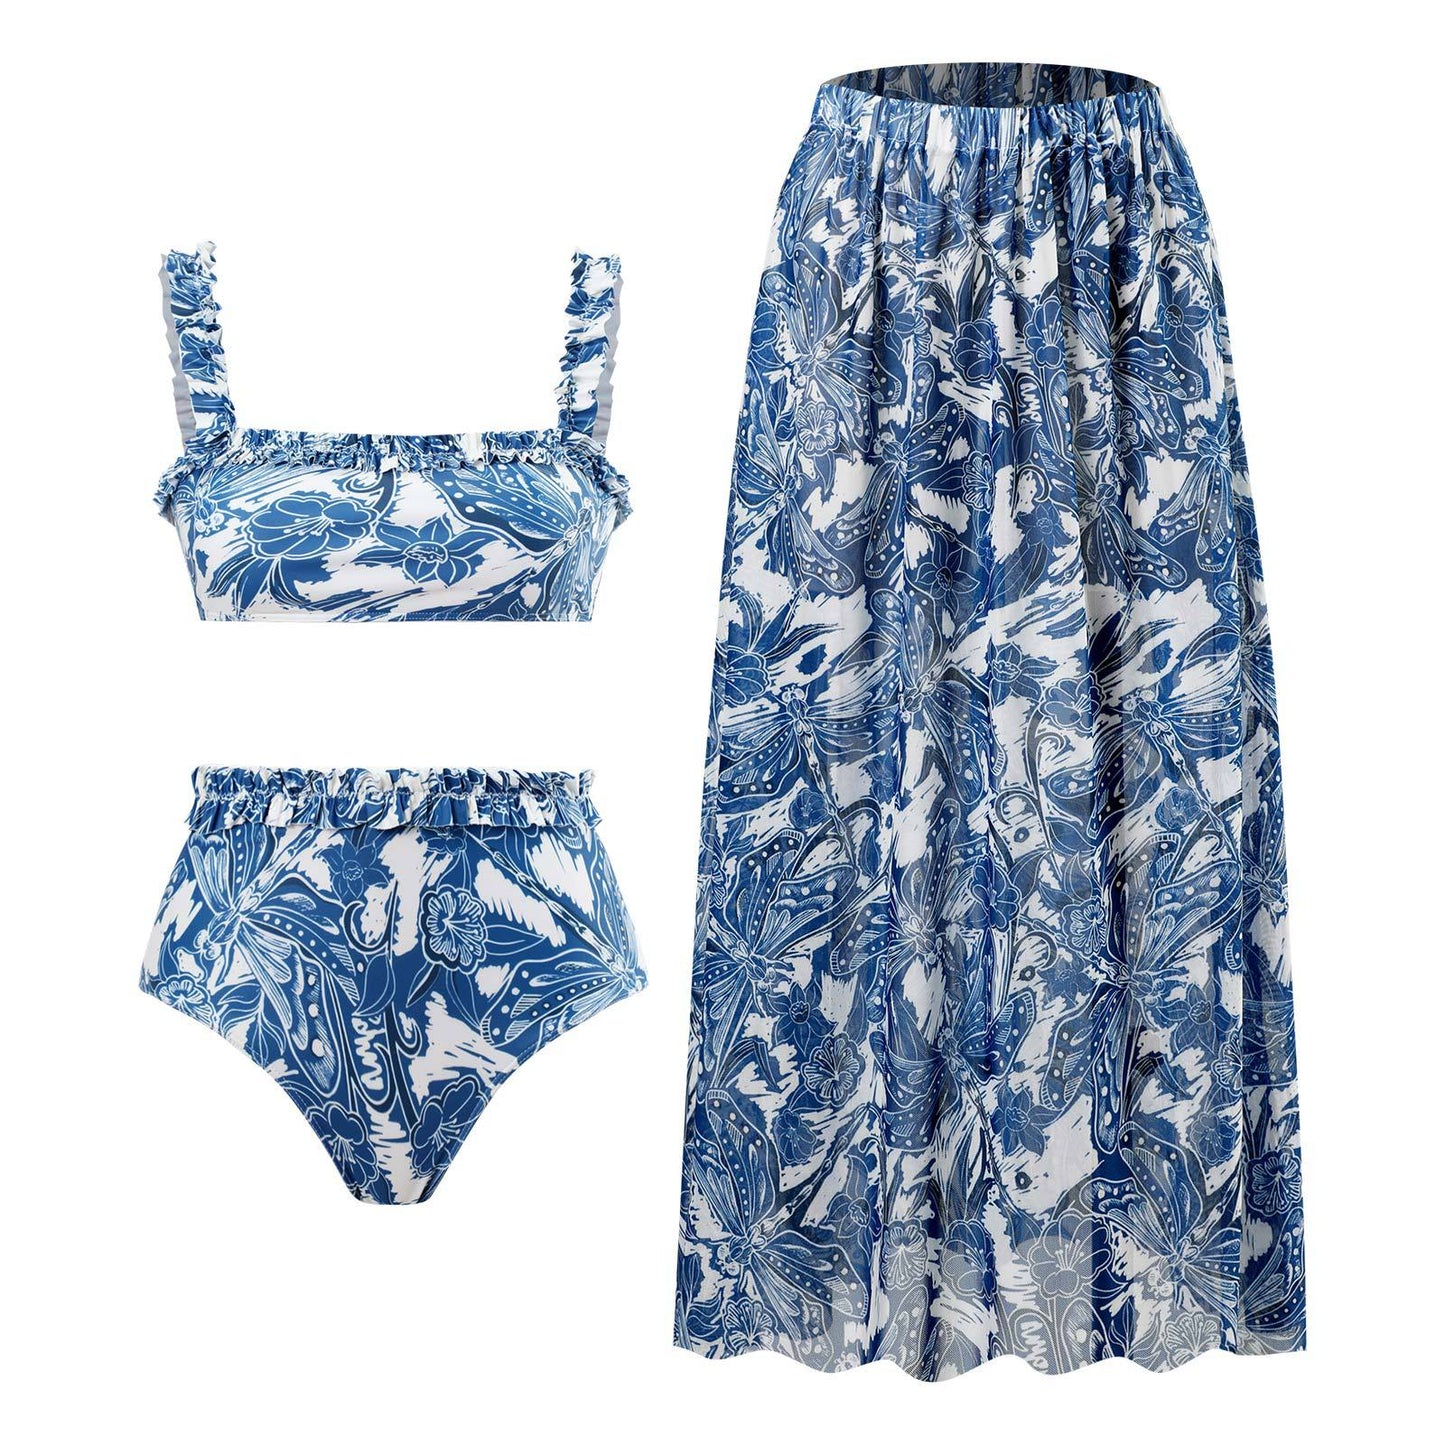 Summer Outfits 2023 | Retro Ruffles Conservative High Waist Bikini with Matching Skirt